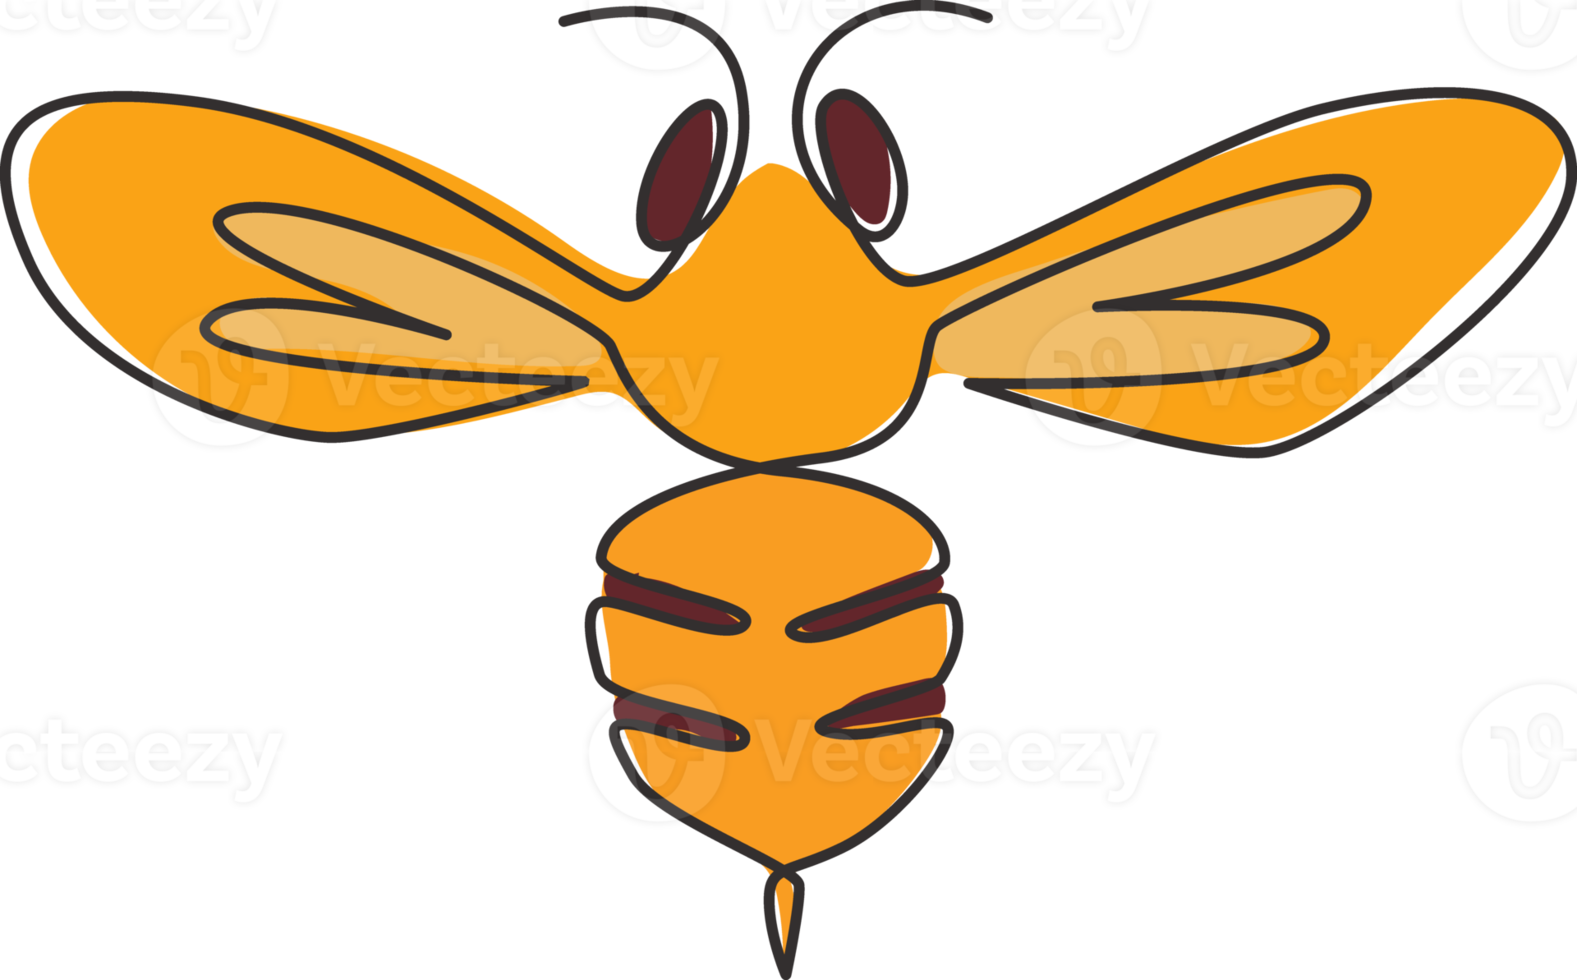 un disegno a linea continua di un'elegante ape per l'identità del logo aziendale. concetto di icona di fattoria di miele biologico da forma animale di insetto vespa. illustrazione vettoriale di disegno grafico di disegno a linea singola png